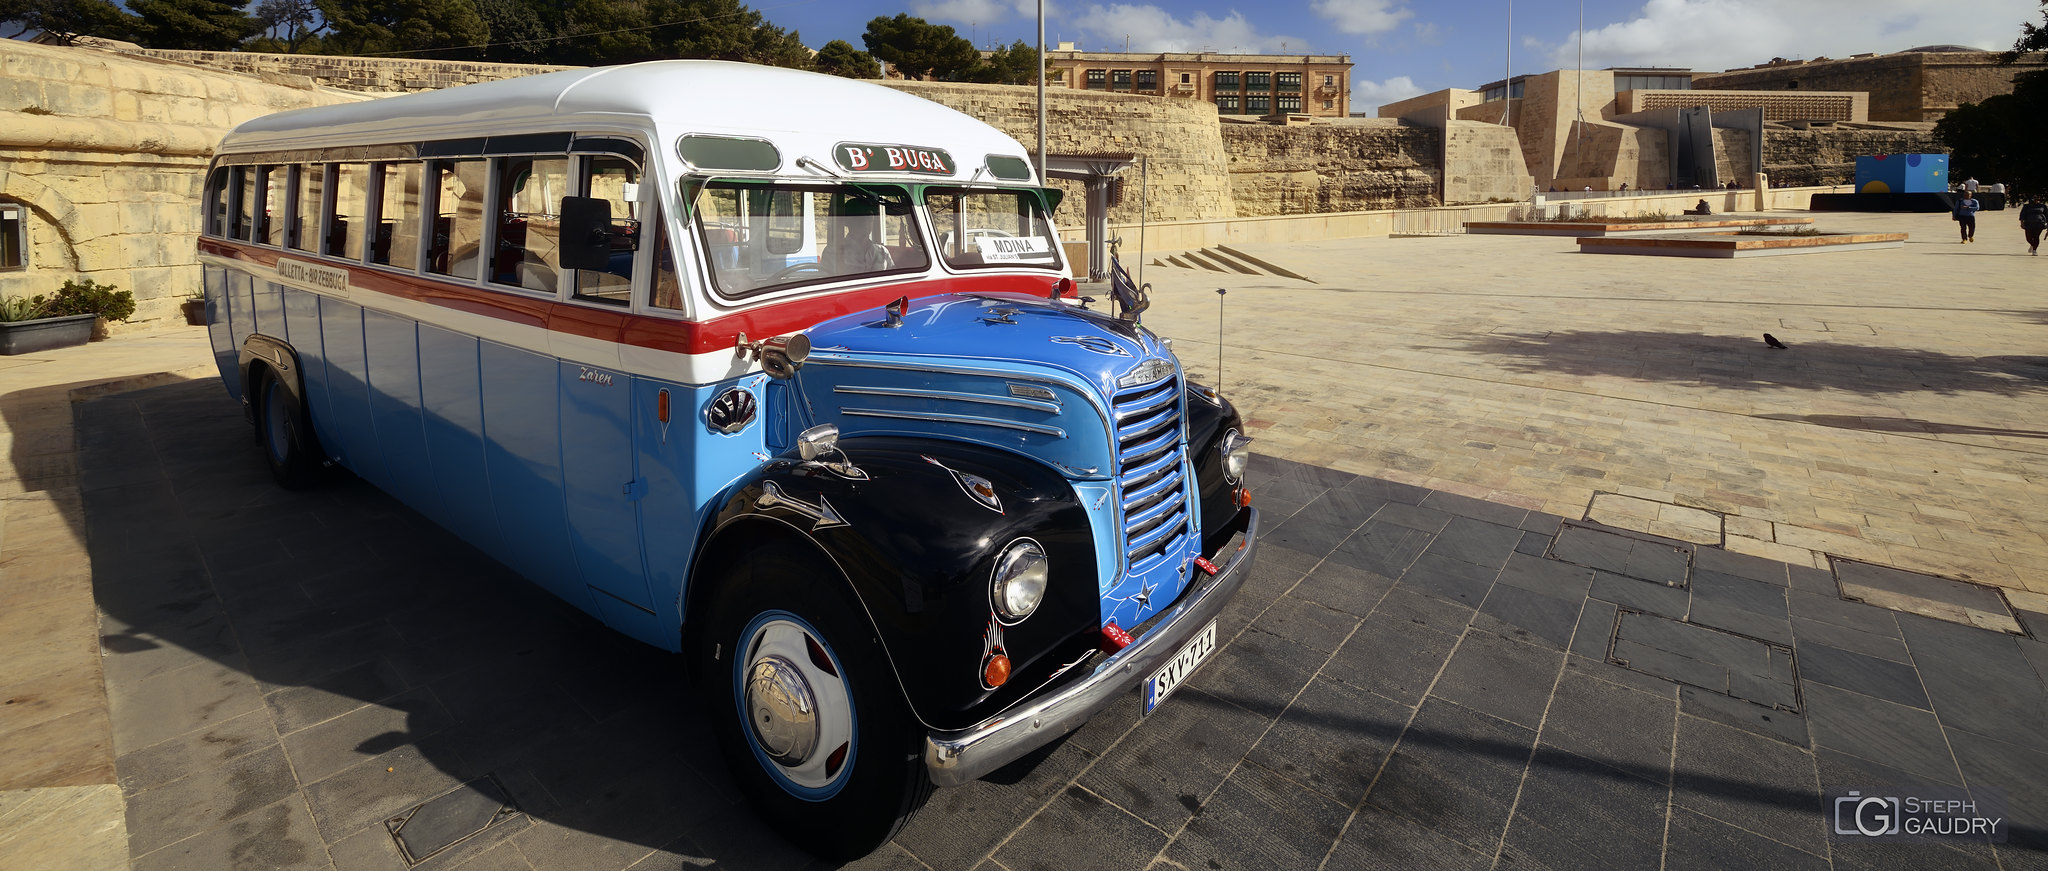 Vieux bus à Malte [Cliquez pour lancer le diaporama]